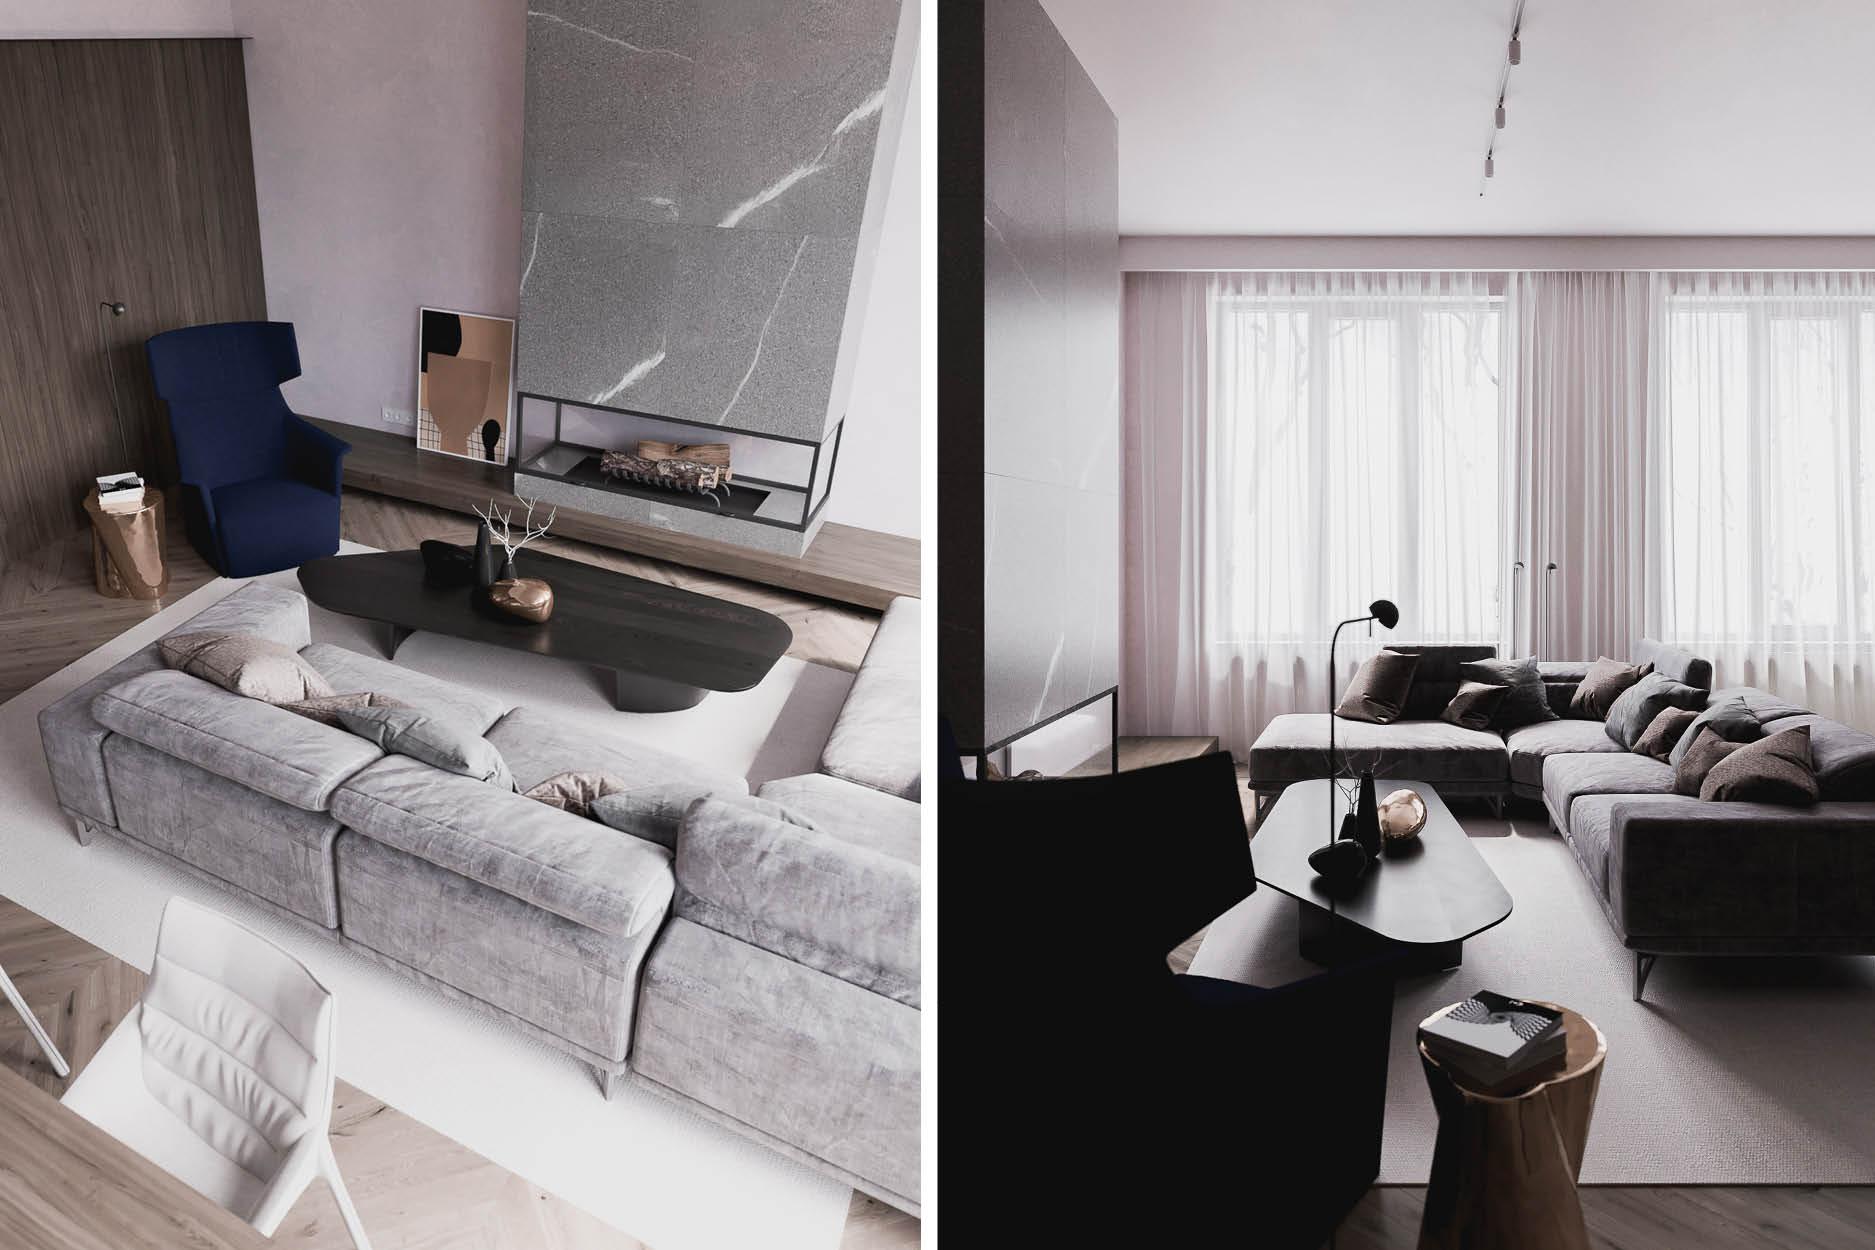 一個人的精彩設計：她家以粉灰色組出了柔美生活氛圍